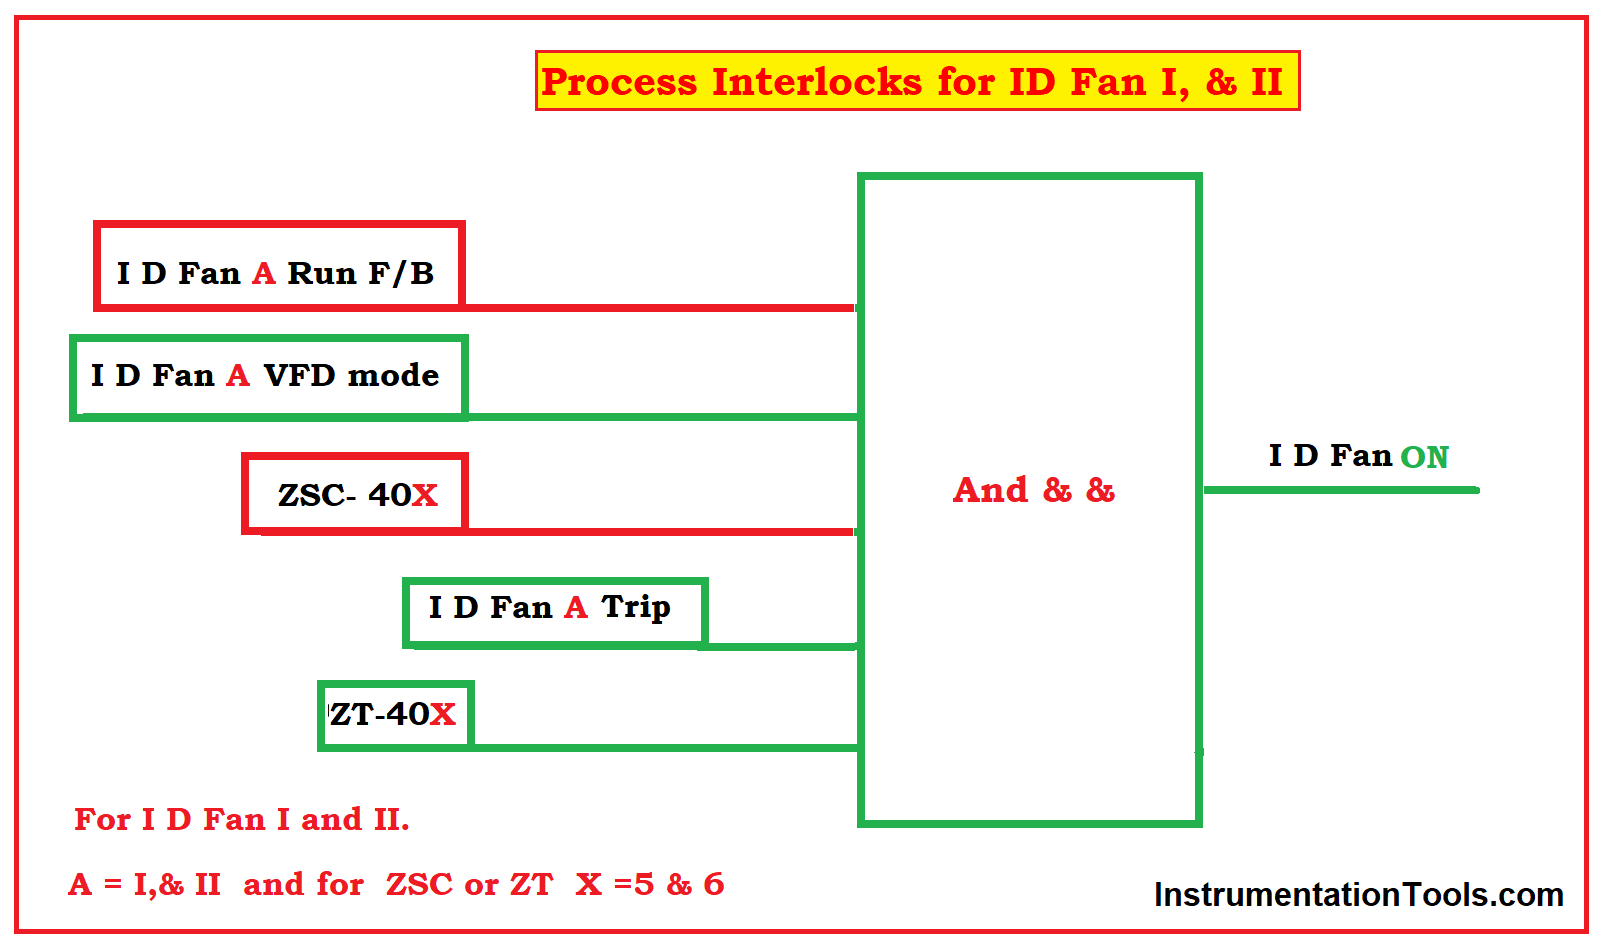 Process Interlock for ID Fan I, & II.